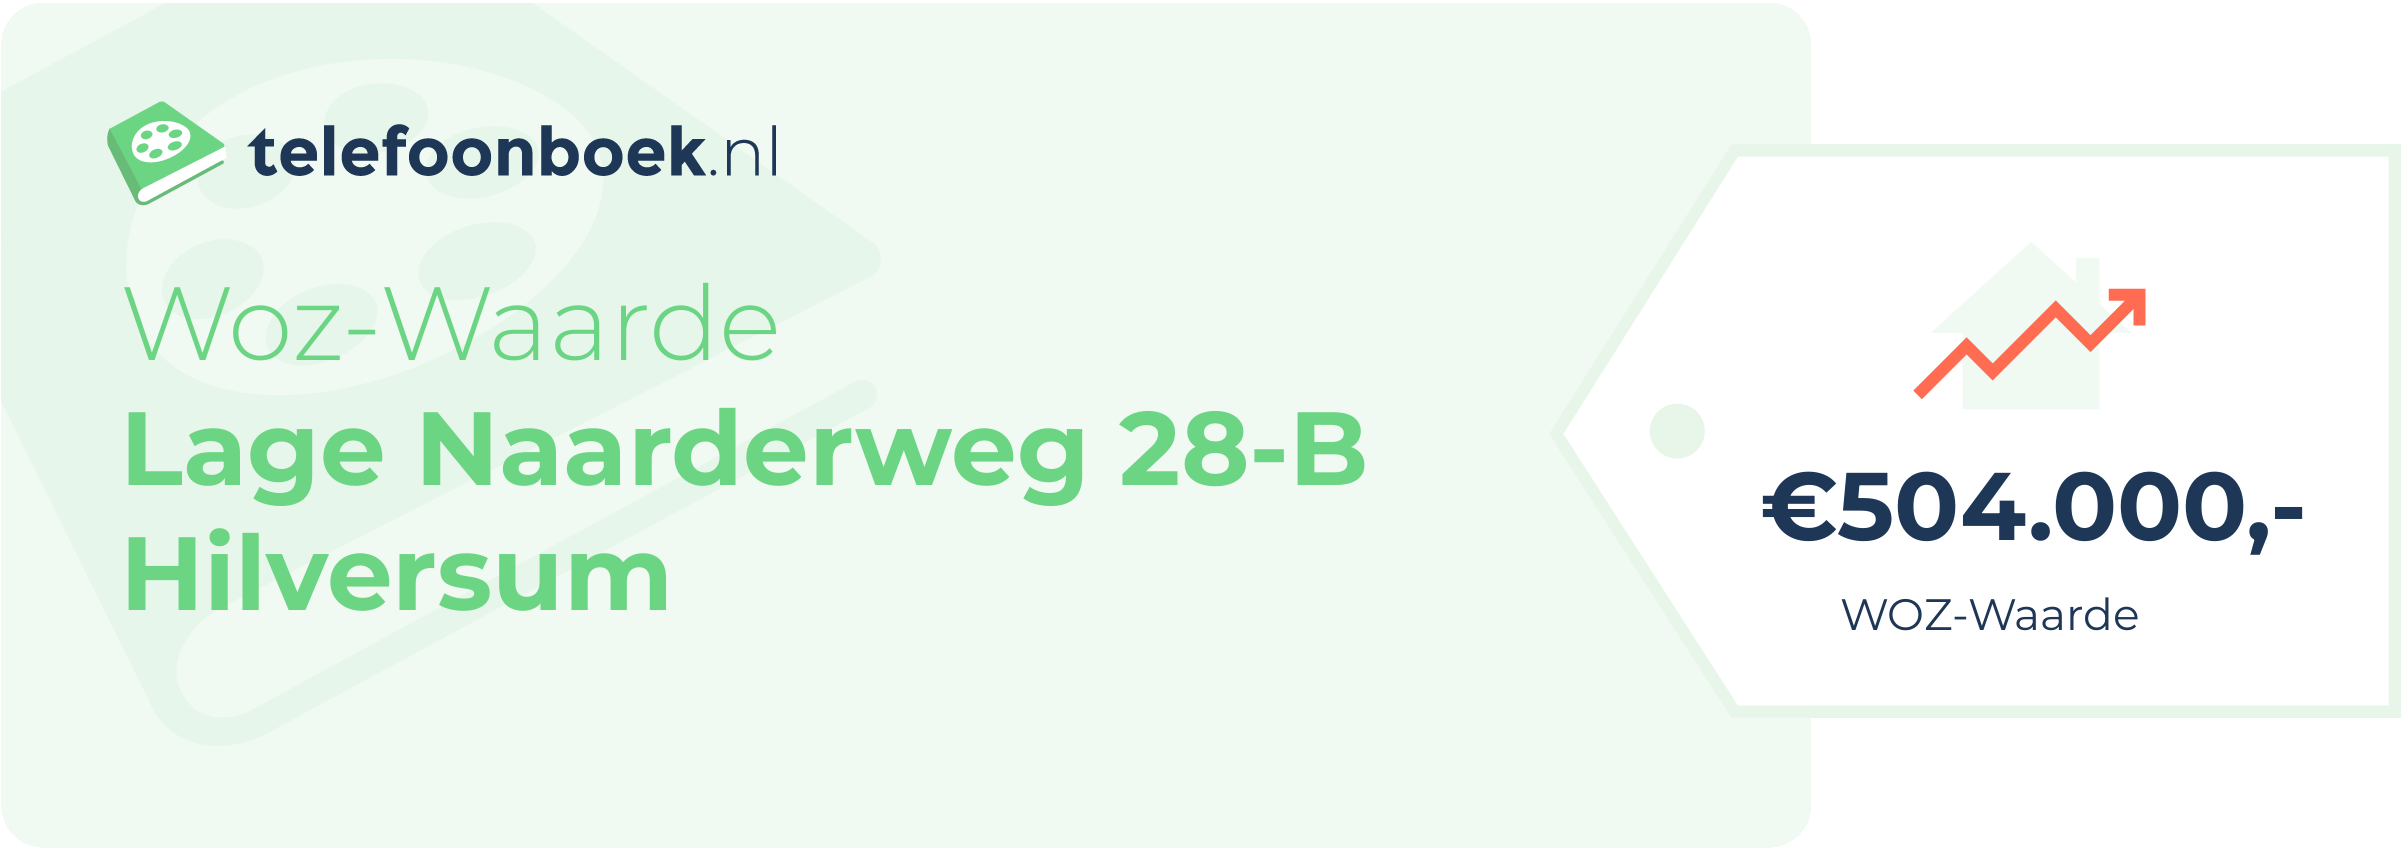 WOZ-waarde Lage Naarderweg 28-B Hilversum